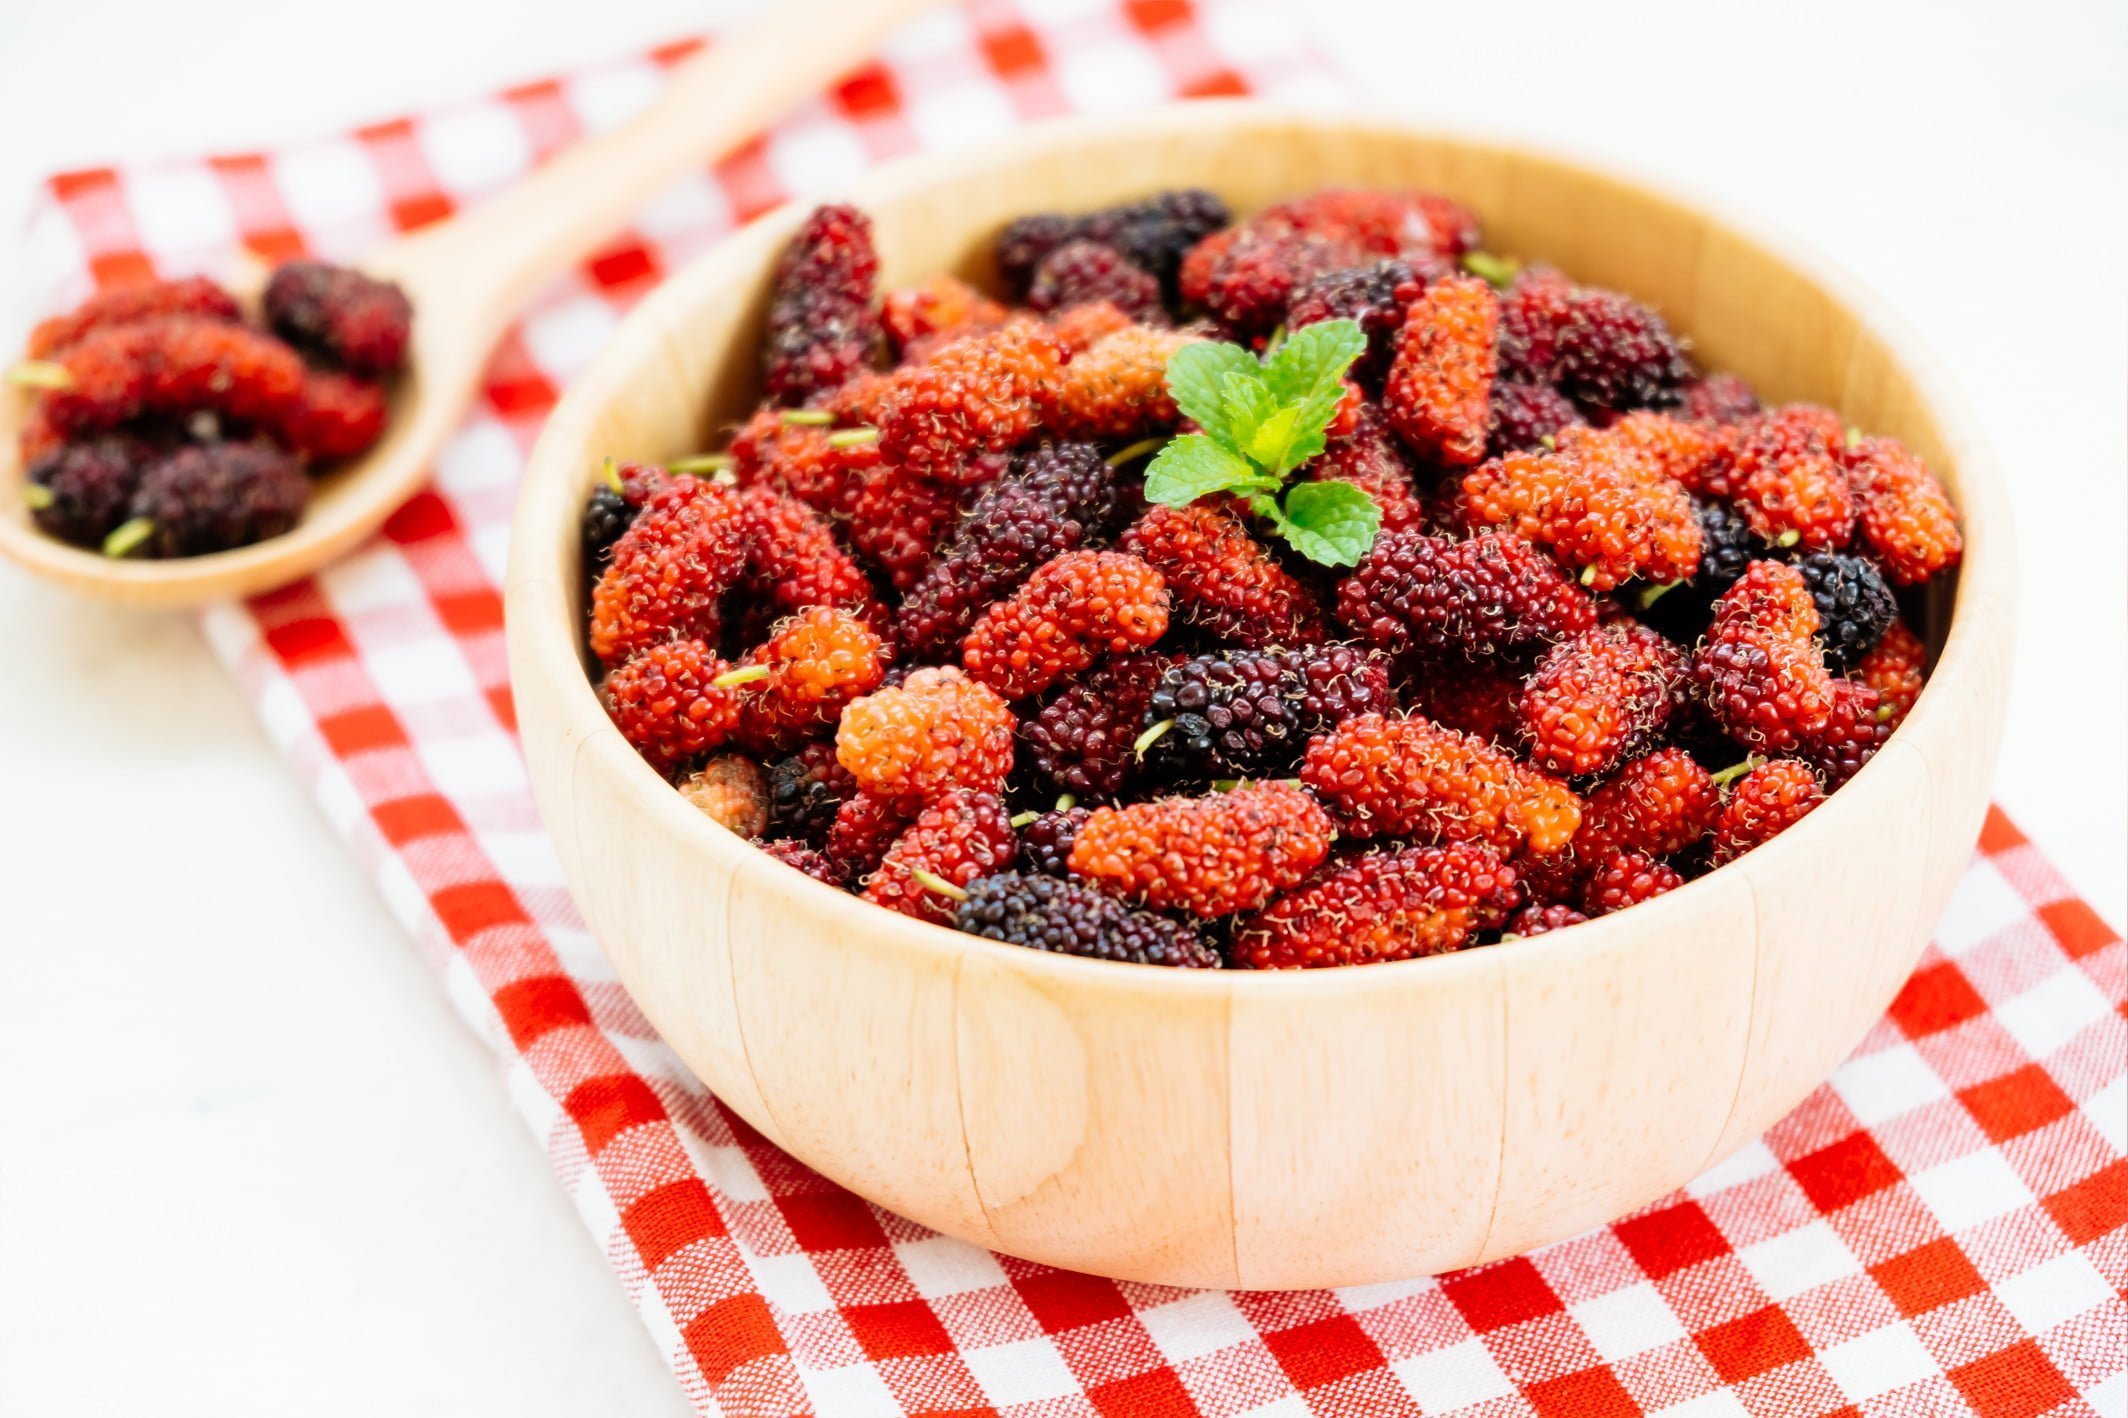 cukorbetegség kezelésére mulberry)